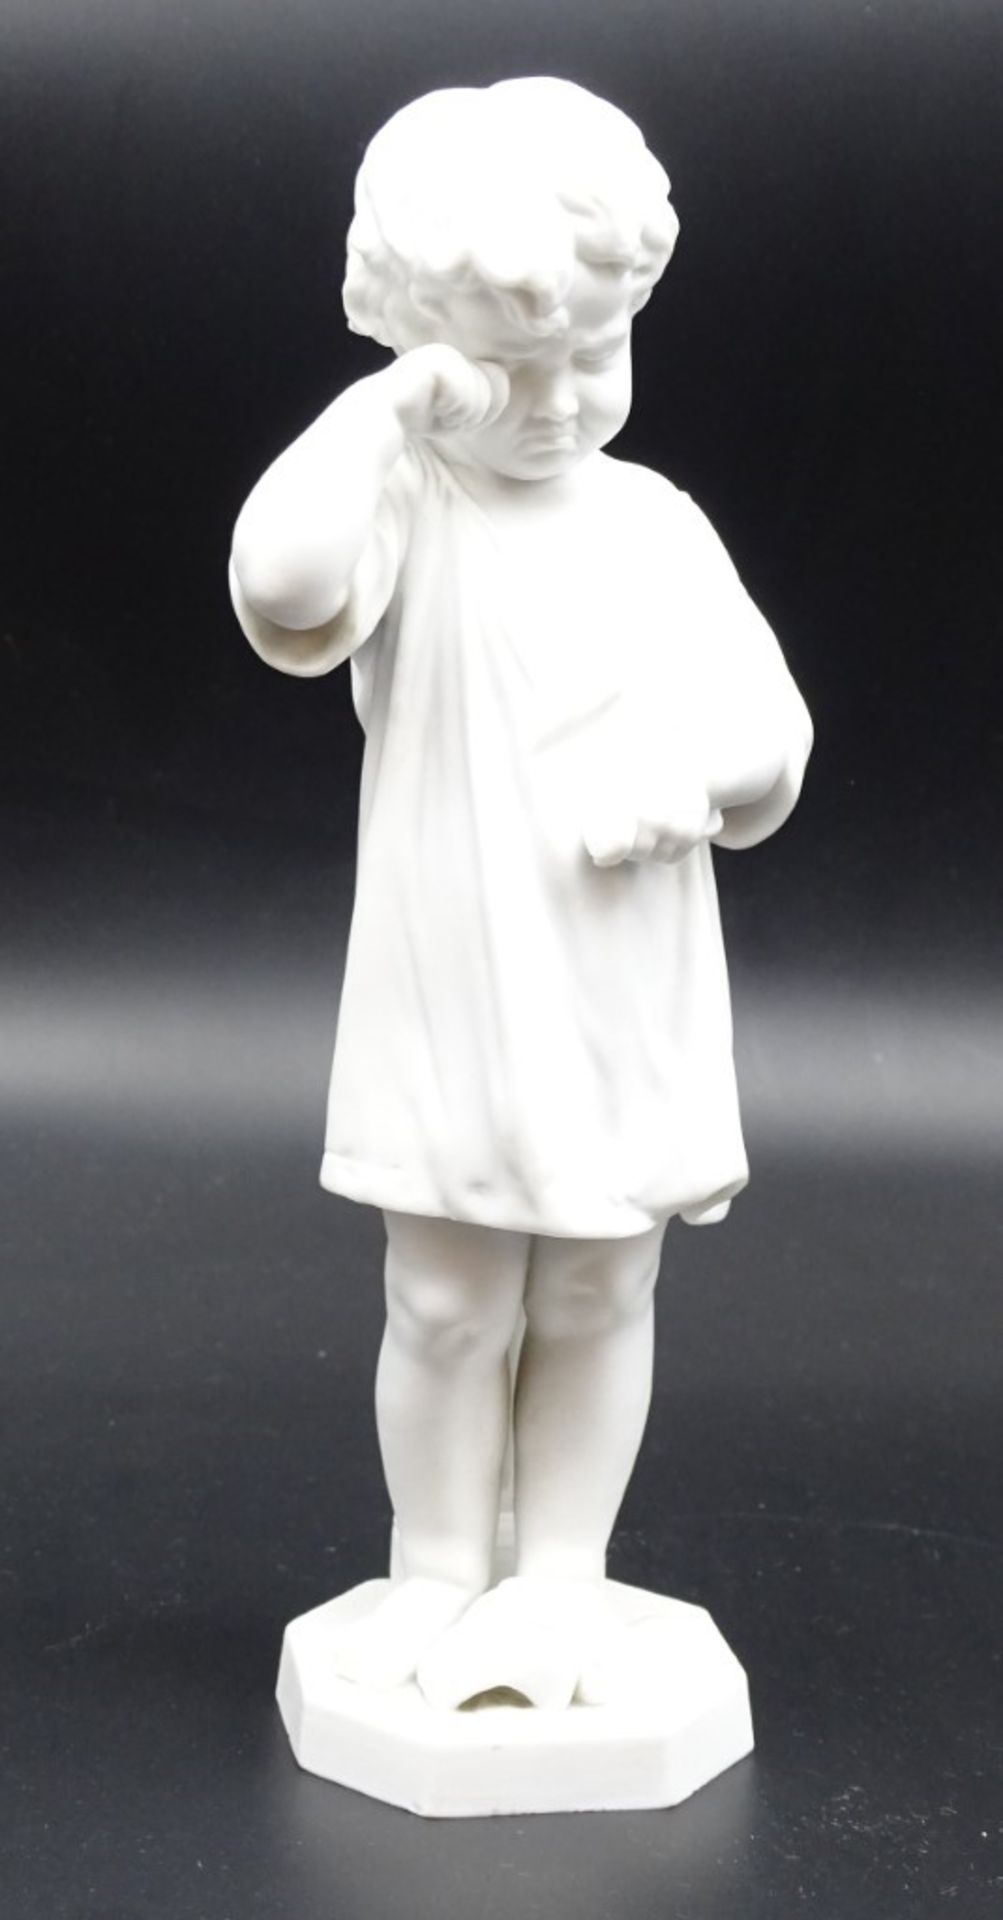 Kinderfigur aus Biskuitporzellan mit zerbrochenem Krug, ungemarkt, H. 24 cm, leicht reinigungsbedür